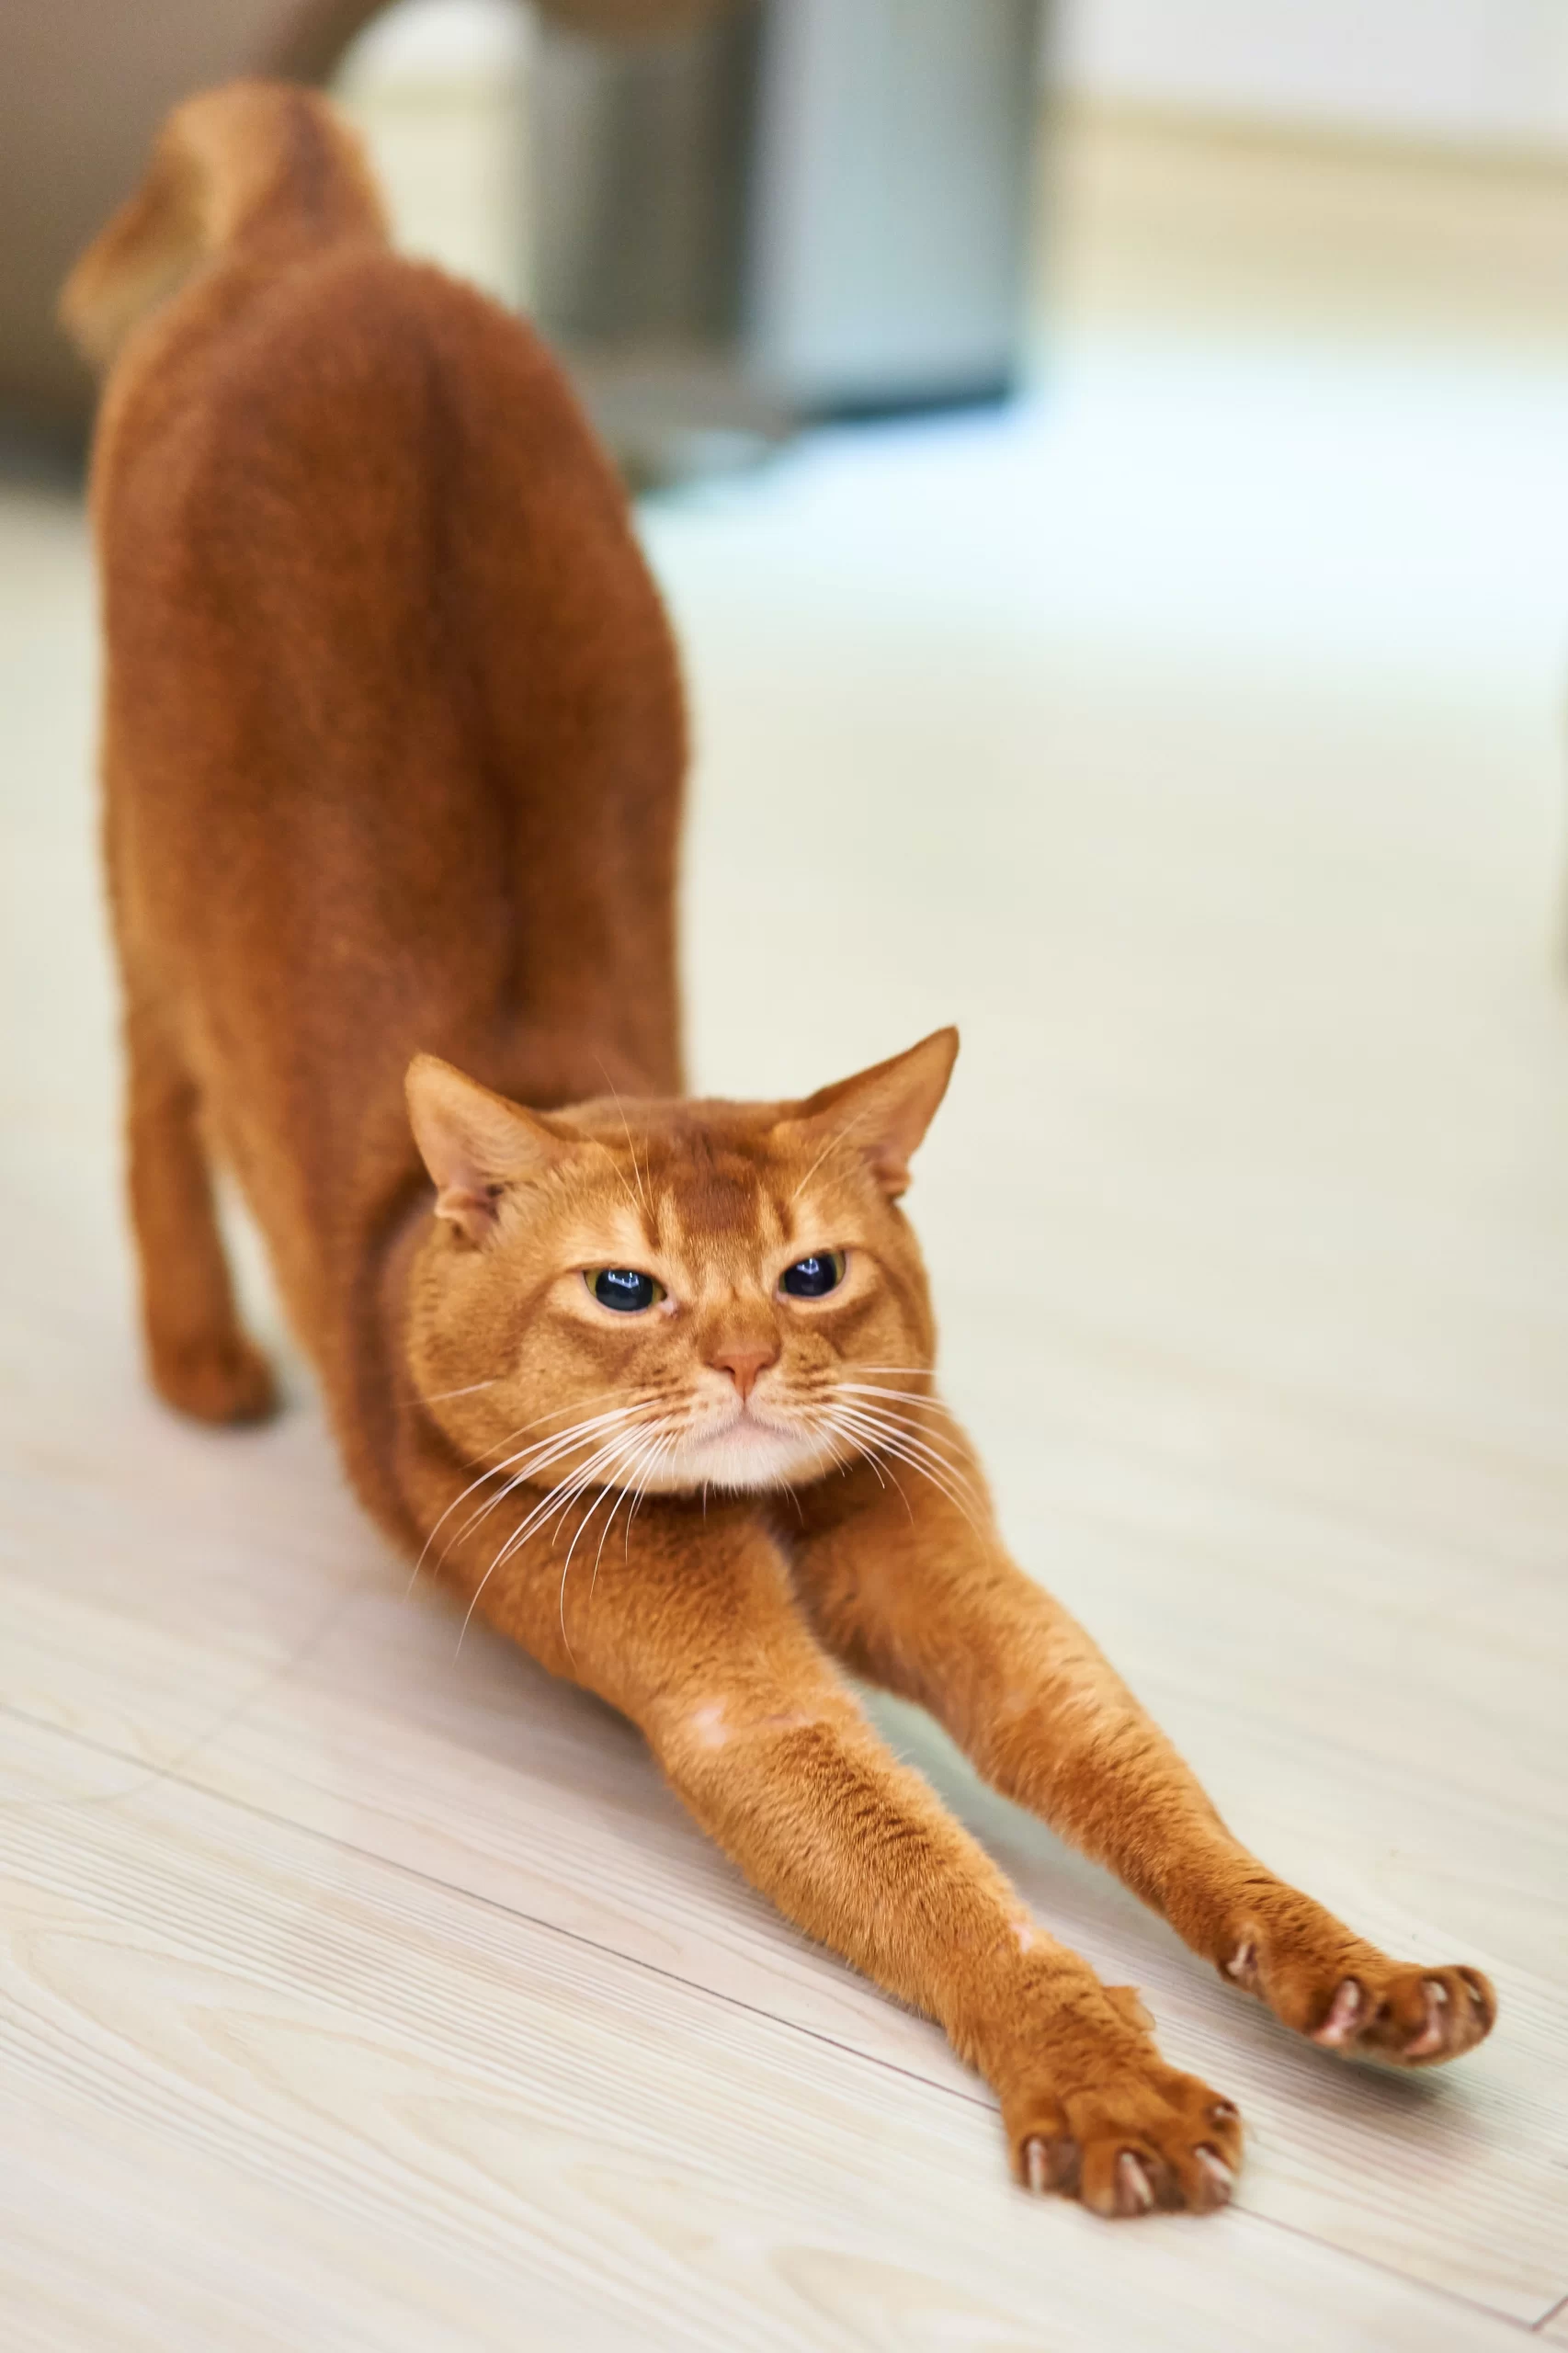 timo-volz-orange-cat-full-stretch-downward-dog-unsplash-scaled.webp